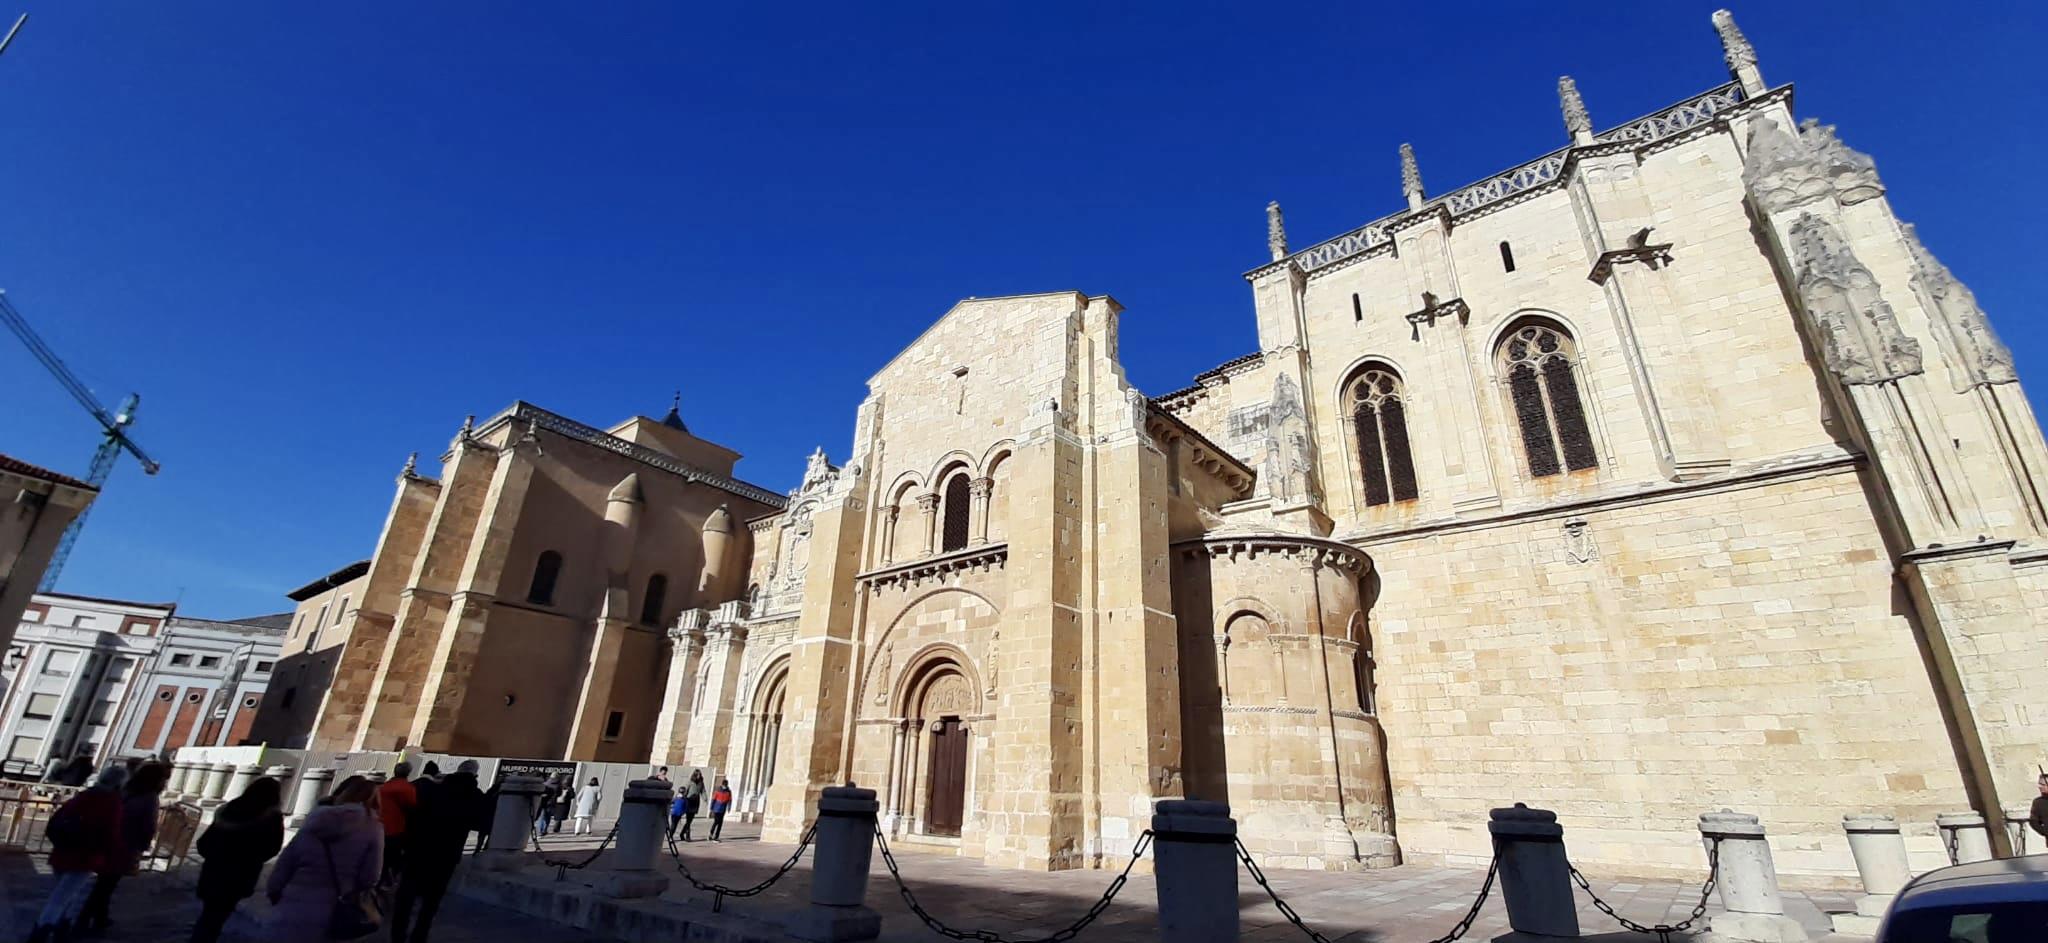 Visita guiada privada que combina los recursos turísticos más importantes de la ciudad, como son la Catedral de León y su casco antiguo.